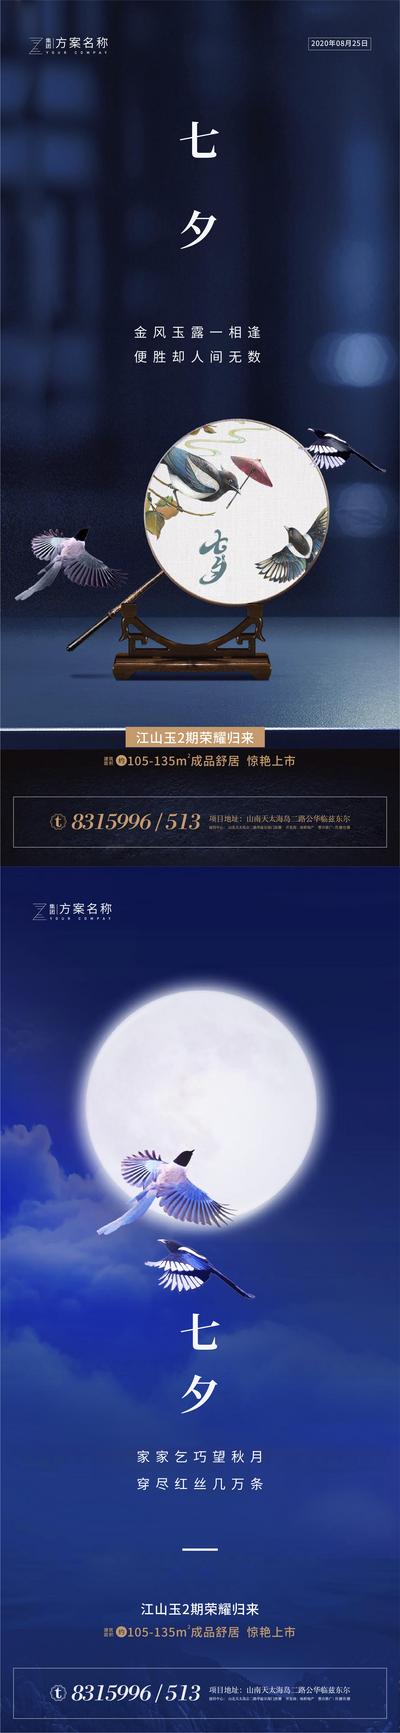 南门网 海报 房地产 七夕节 中国传统节日 情人节 喜鹊 扇子